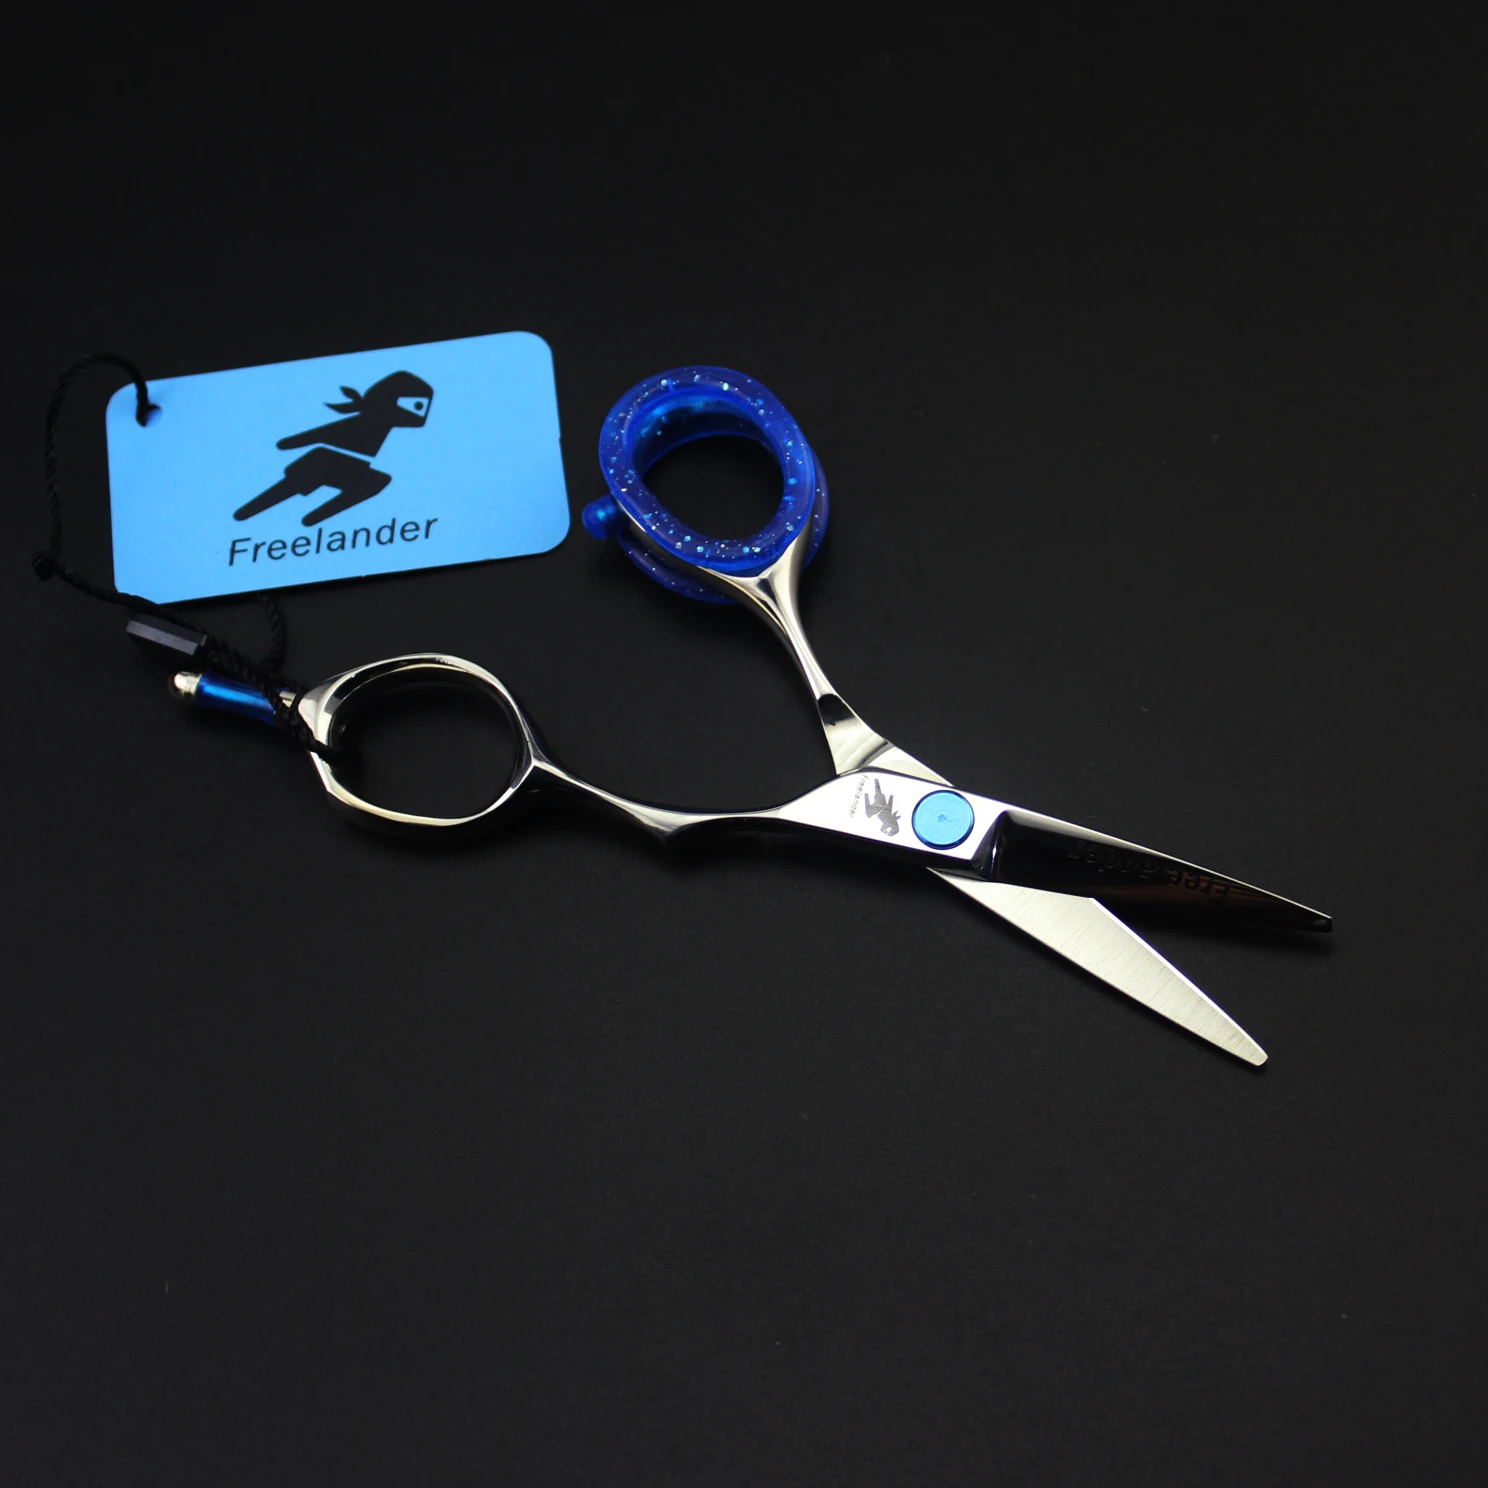 4.0in. Профессиональные Парикмахерские ножницы Freelander, набор ножниц для стрижки волос, парикмахерские ножницы высокого качества, салонные ножницы серебристого цвета